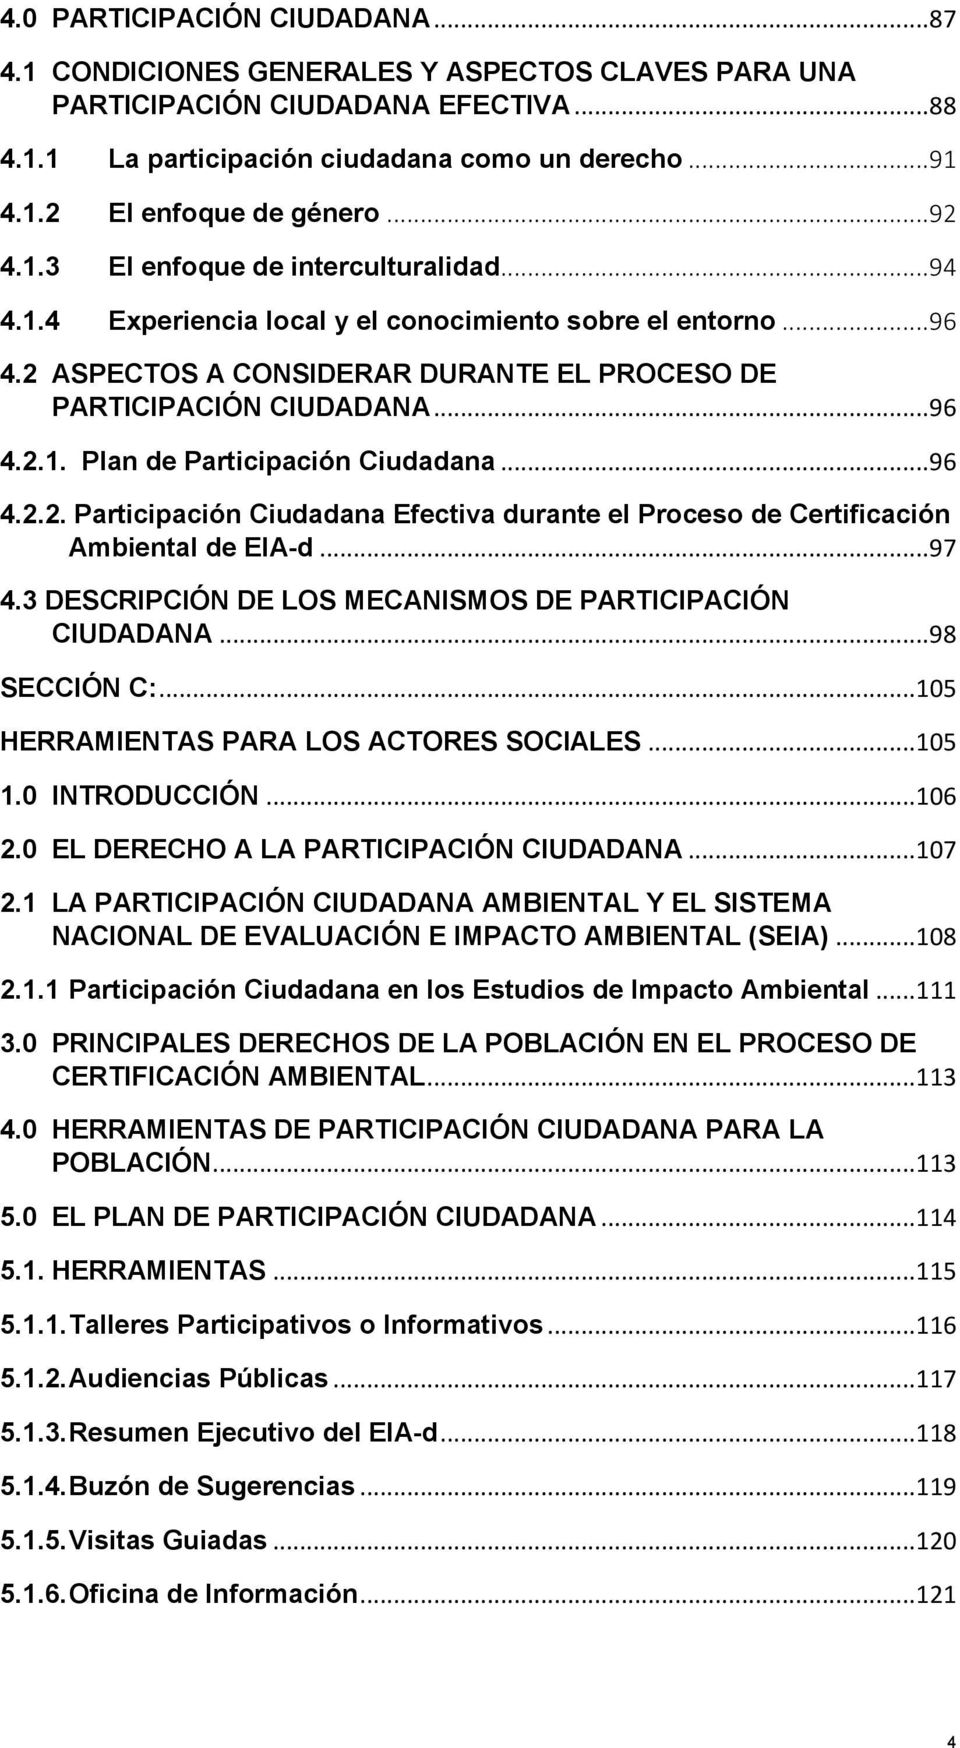 .. 96 4.2.2. Participación Ciudadana Efectiva durante el Proceso de Certificación Ambiental de EIA-d... 97 4.3 DESCRIPCIÓN DE LOS MECANISMOS DE PARTICIPACIÓN CIUDADANA... 98 SECCIÓN C:.